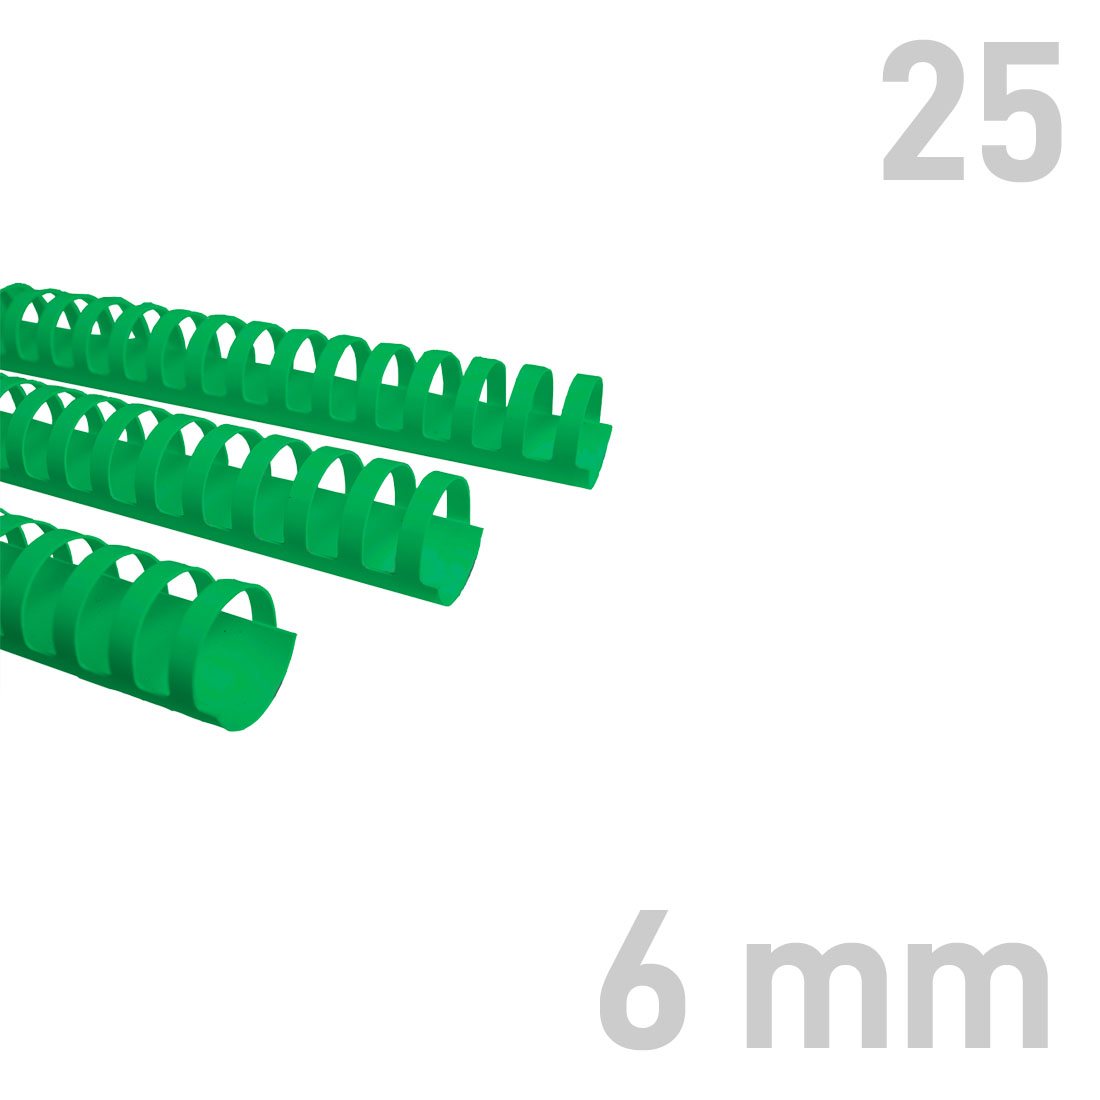 Grzbiety plastikowe - O.COMB Okrągłe 6 mm - zielony - 25 sztuk